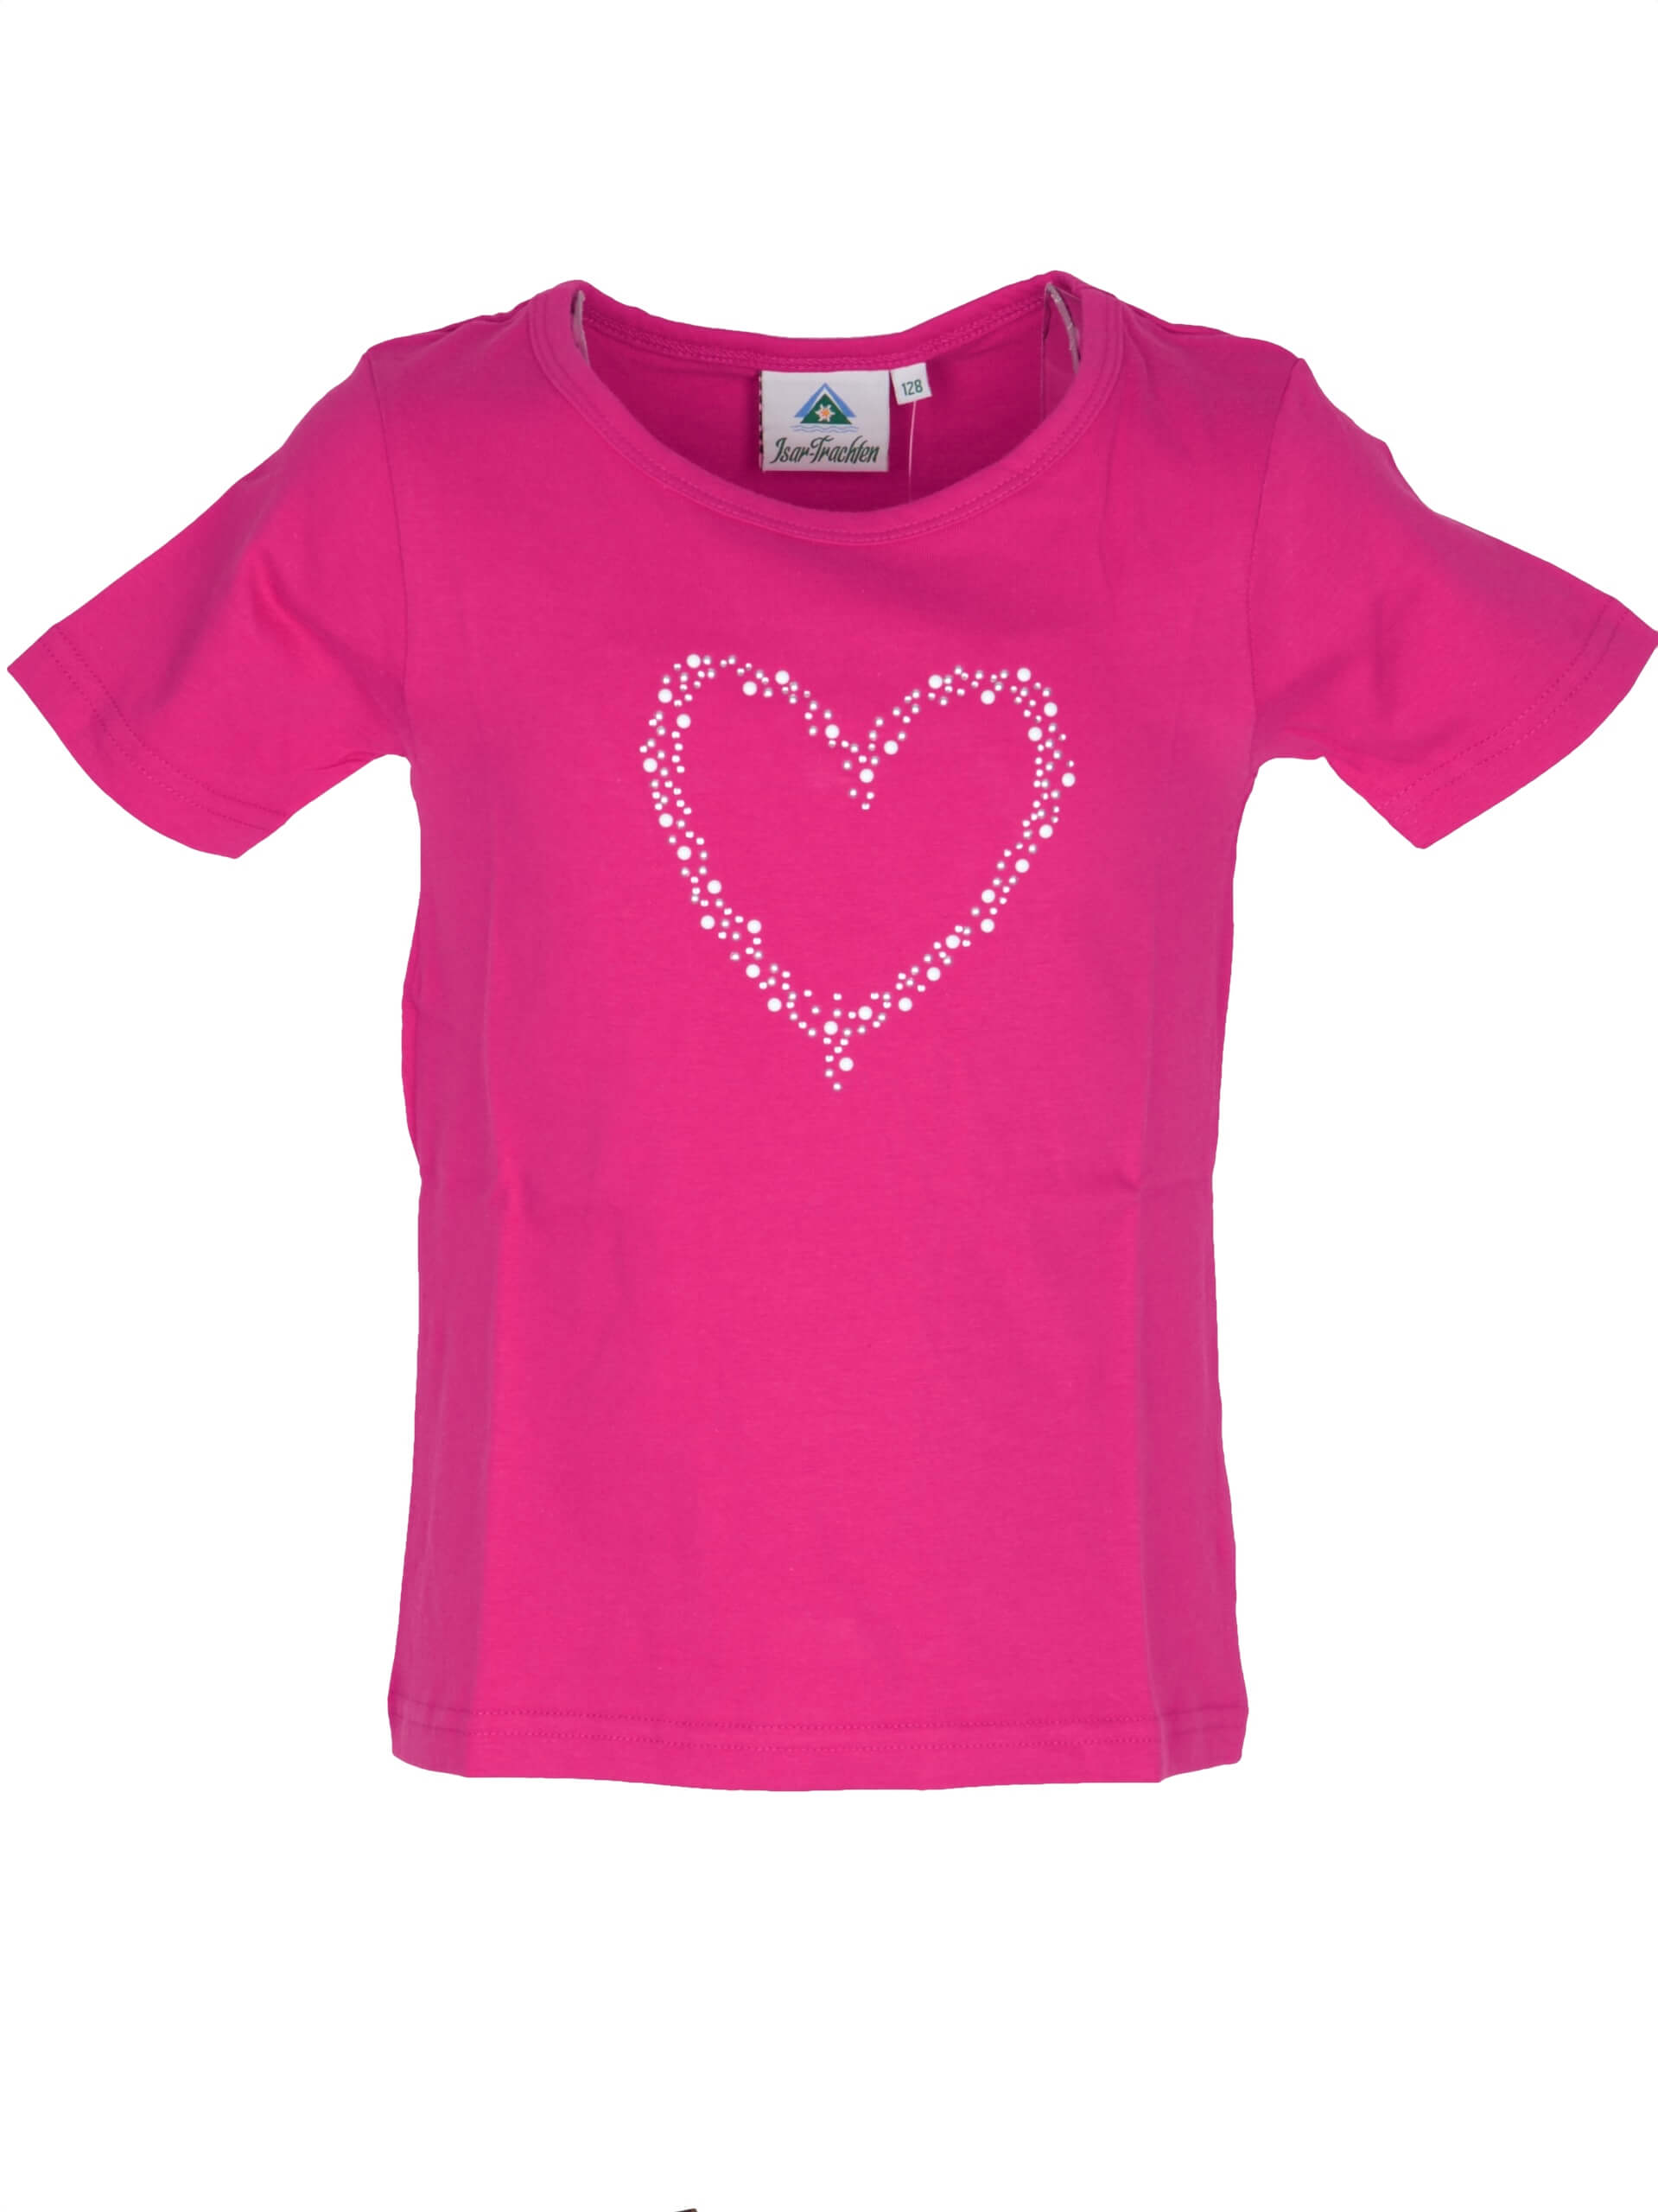 Isar Trachten Mädchen T-Shirt 52763 Gr 86 Pink Herz